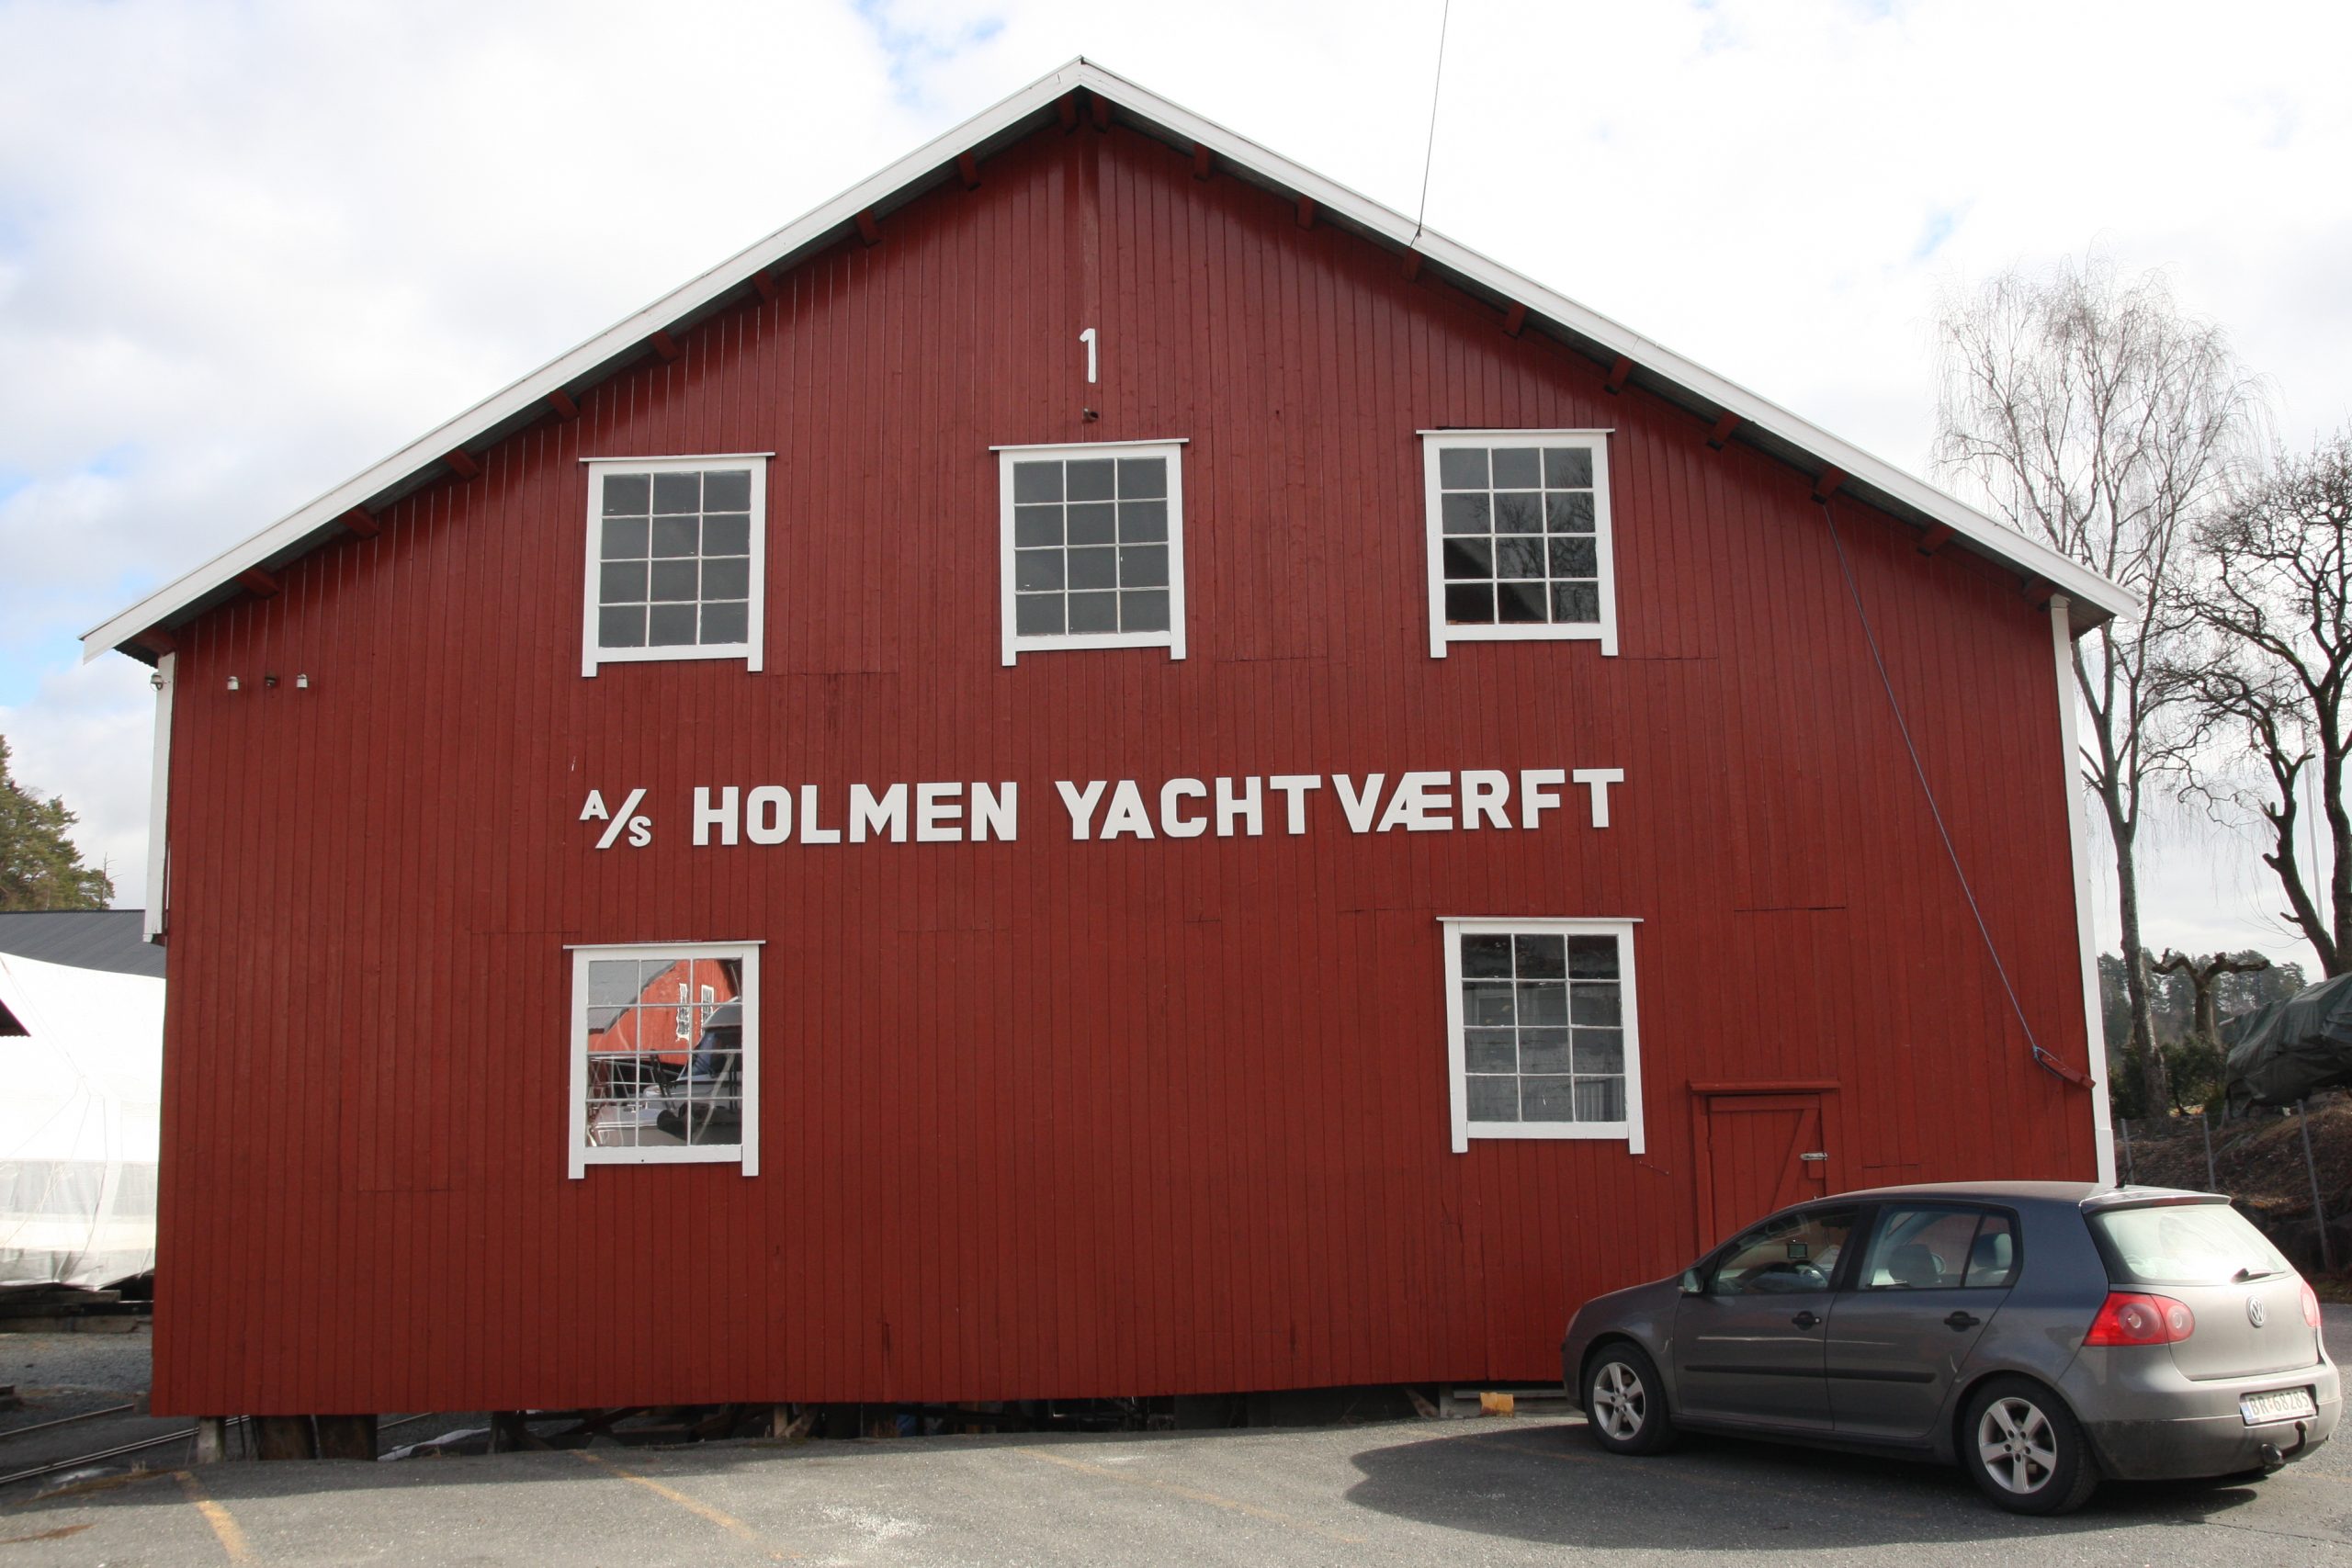 Bilde av Holmen Yachtværft som fremdeleser i drift og knyttet til en fritidsaktivitet befolkningen langs Oslofjorden har dyrket i ulike former gjennom mange hundre år. Foto: Øystein Hagland, Riksantikvaren